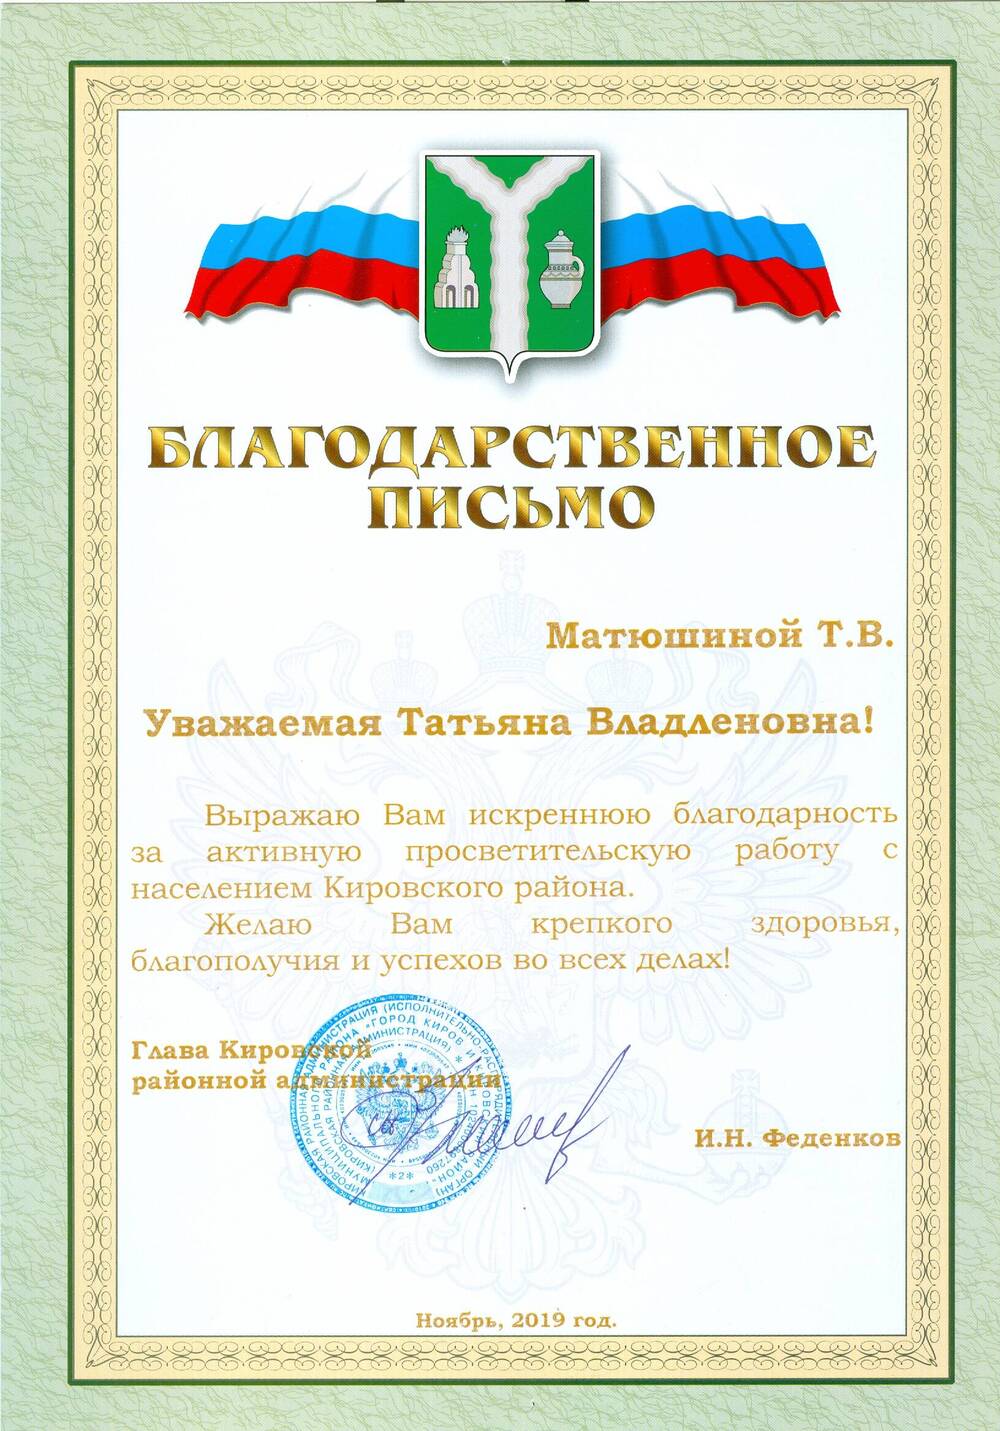 Благодарственное письмо Матюшиной Т. В. от главы Кировской районной администрации И. Н. Феденкова